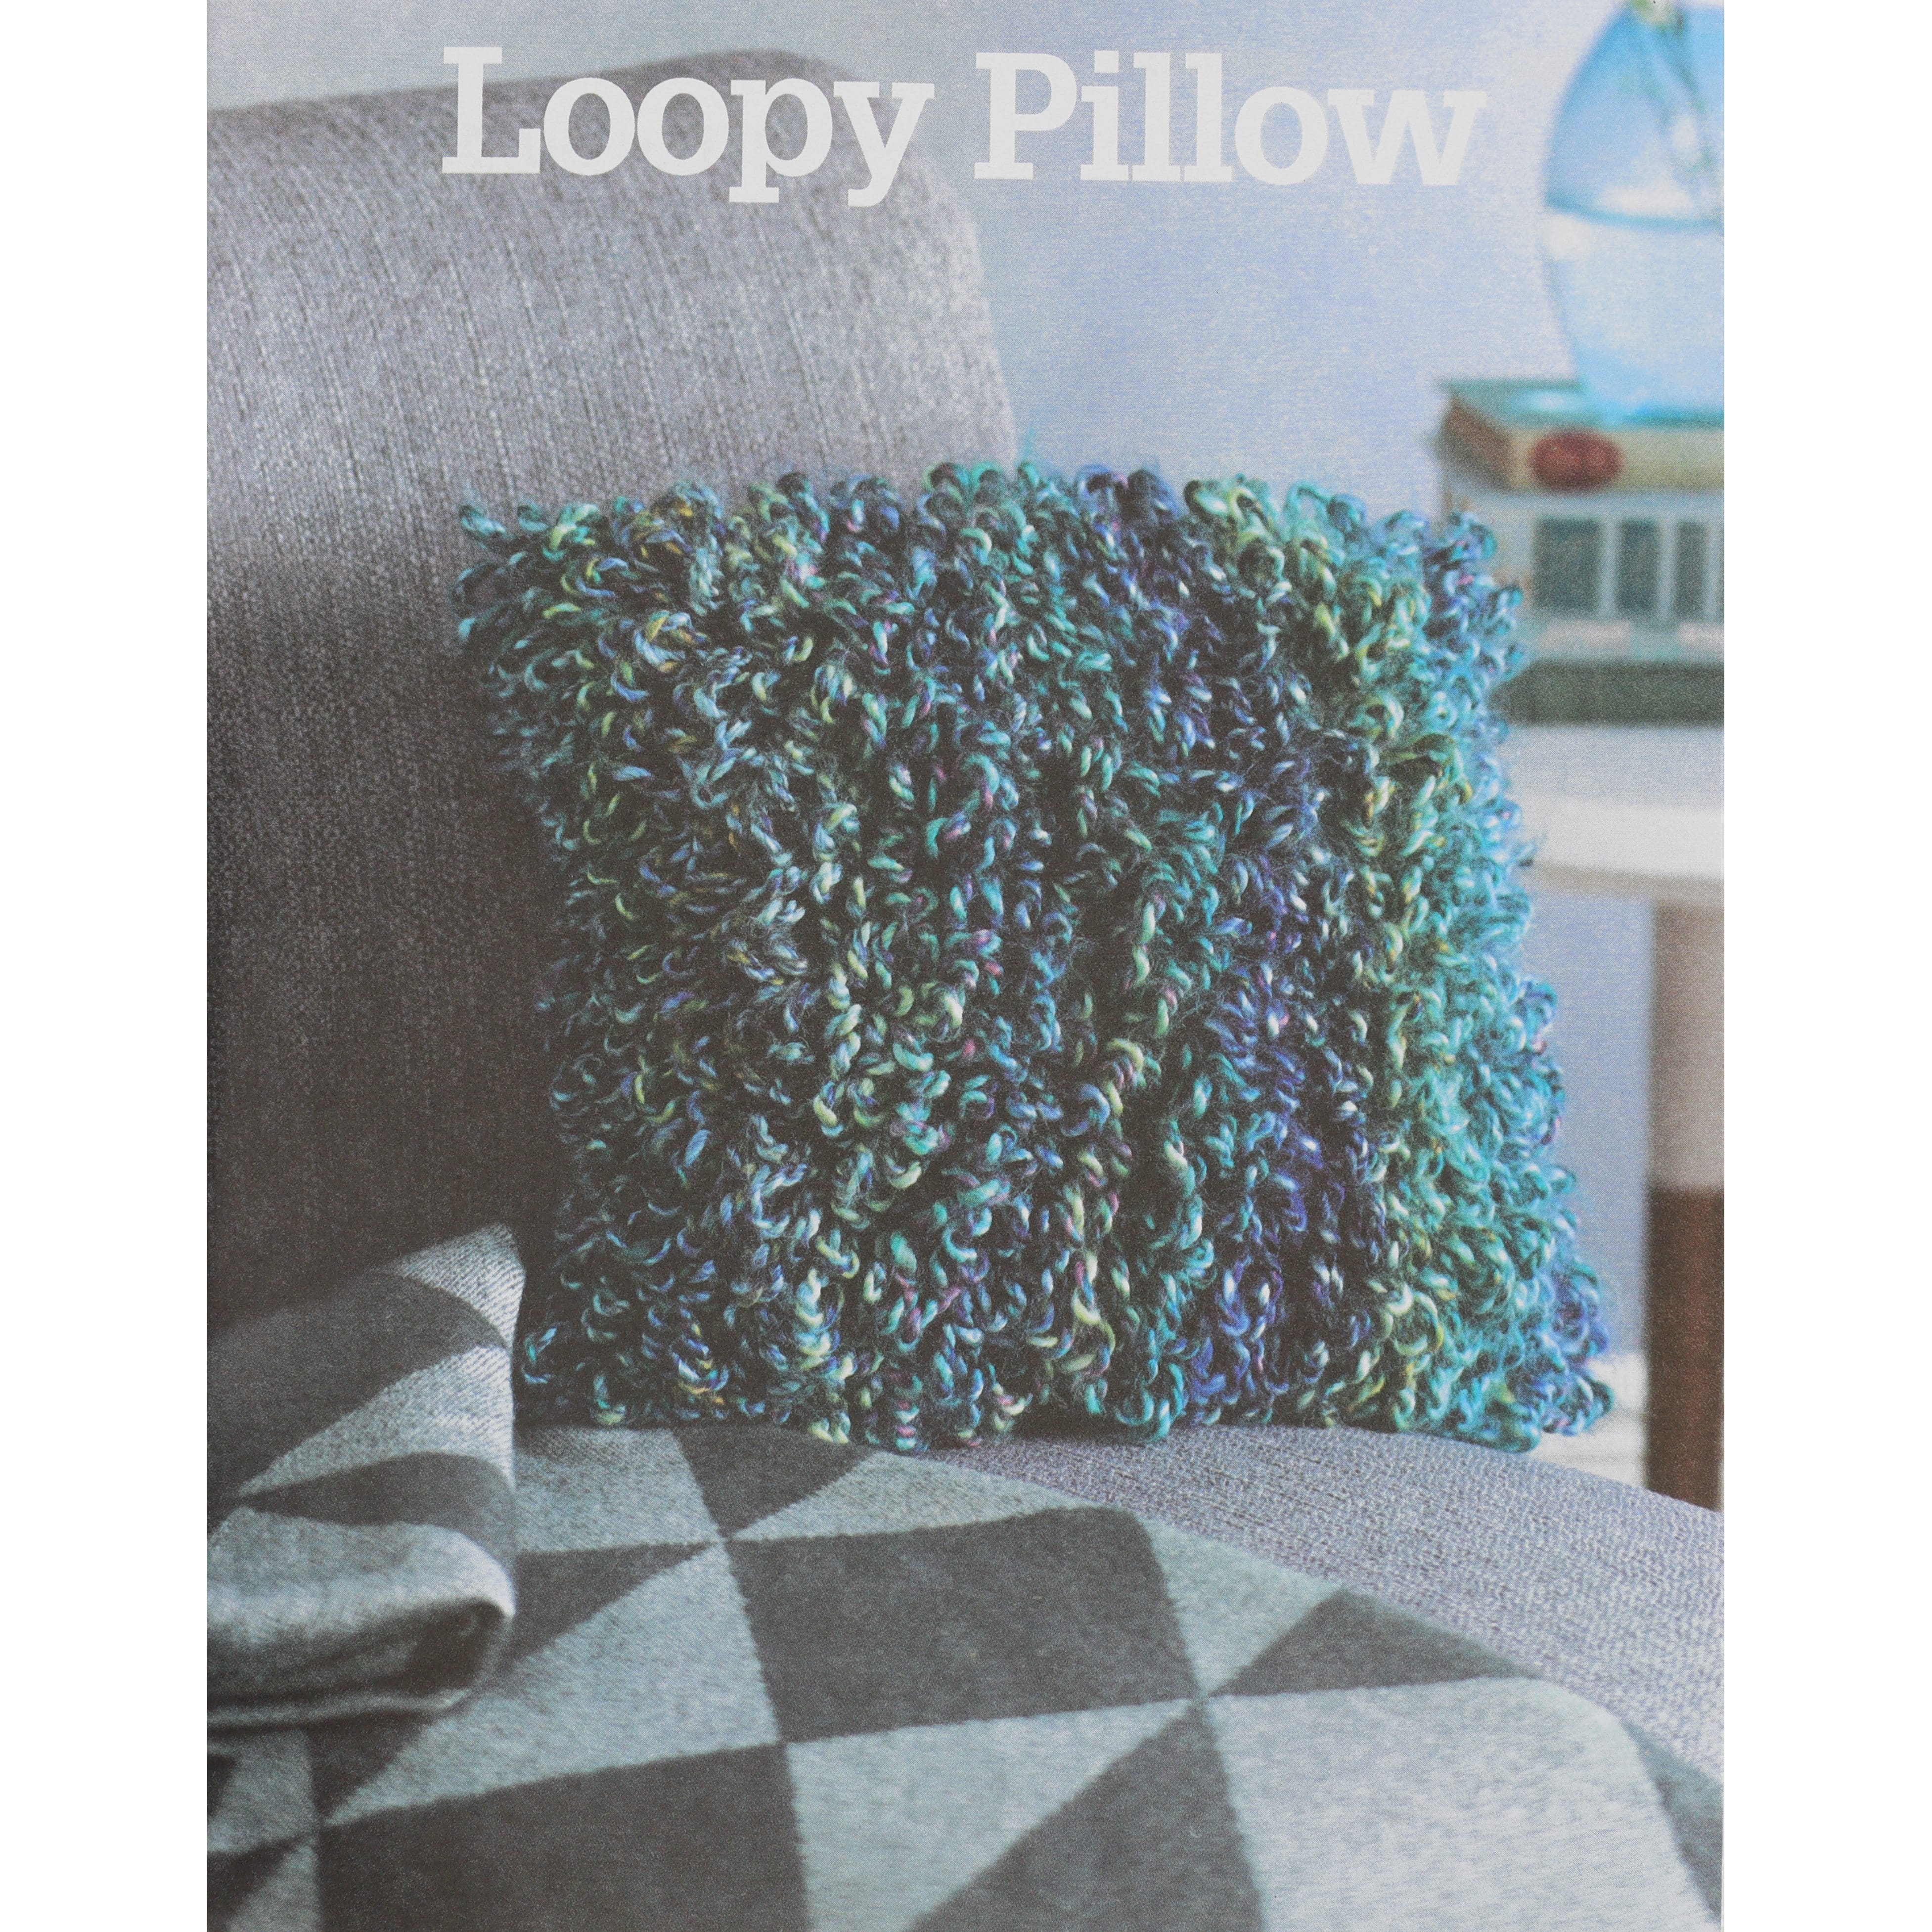 Leisure Arts&#xAE; Learn to Loop Crochet Book Kit